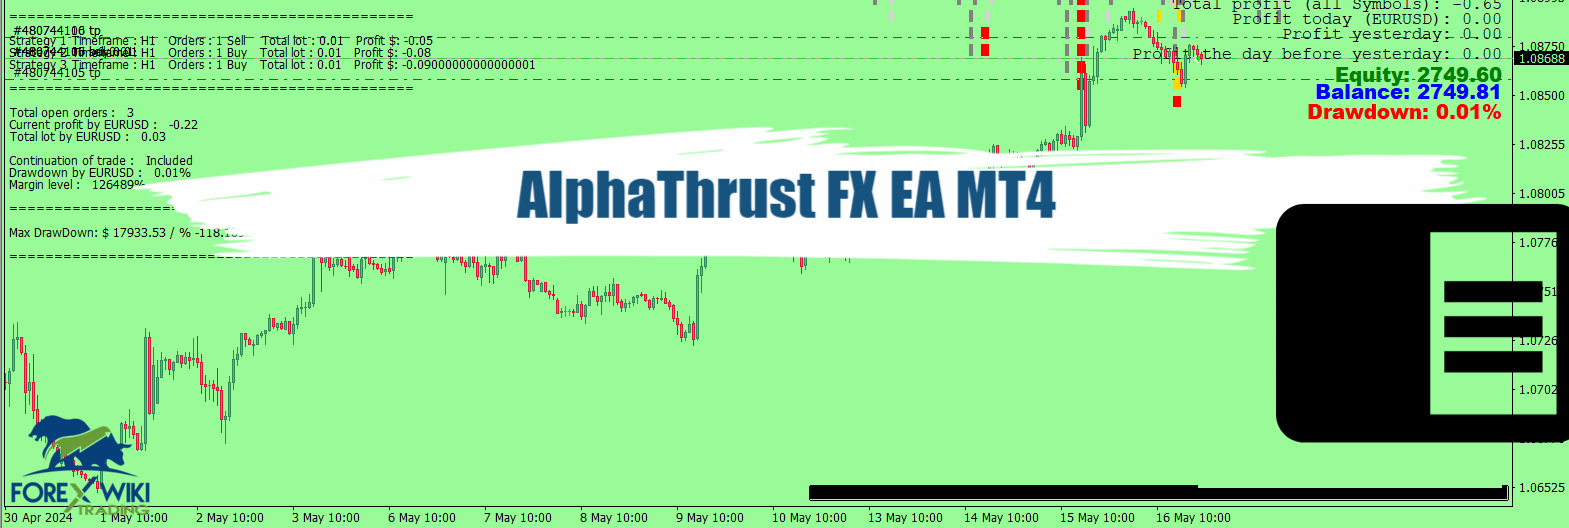 AlphaThrust FX EA MT4 - Free Download 1